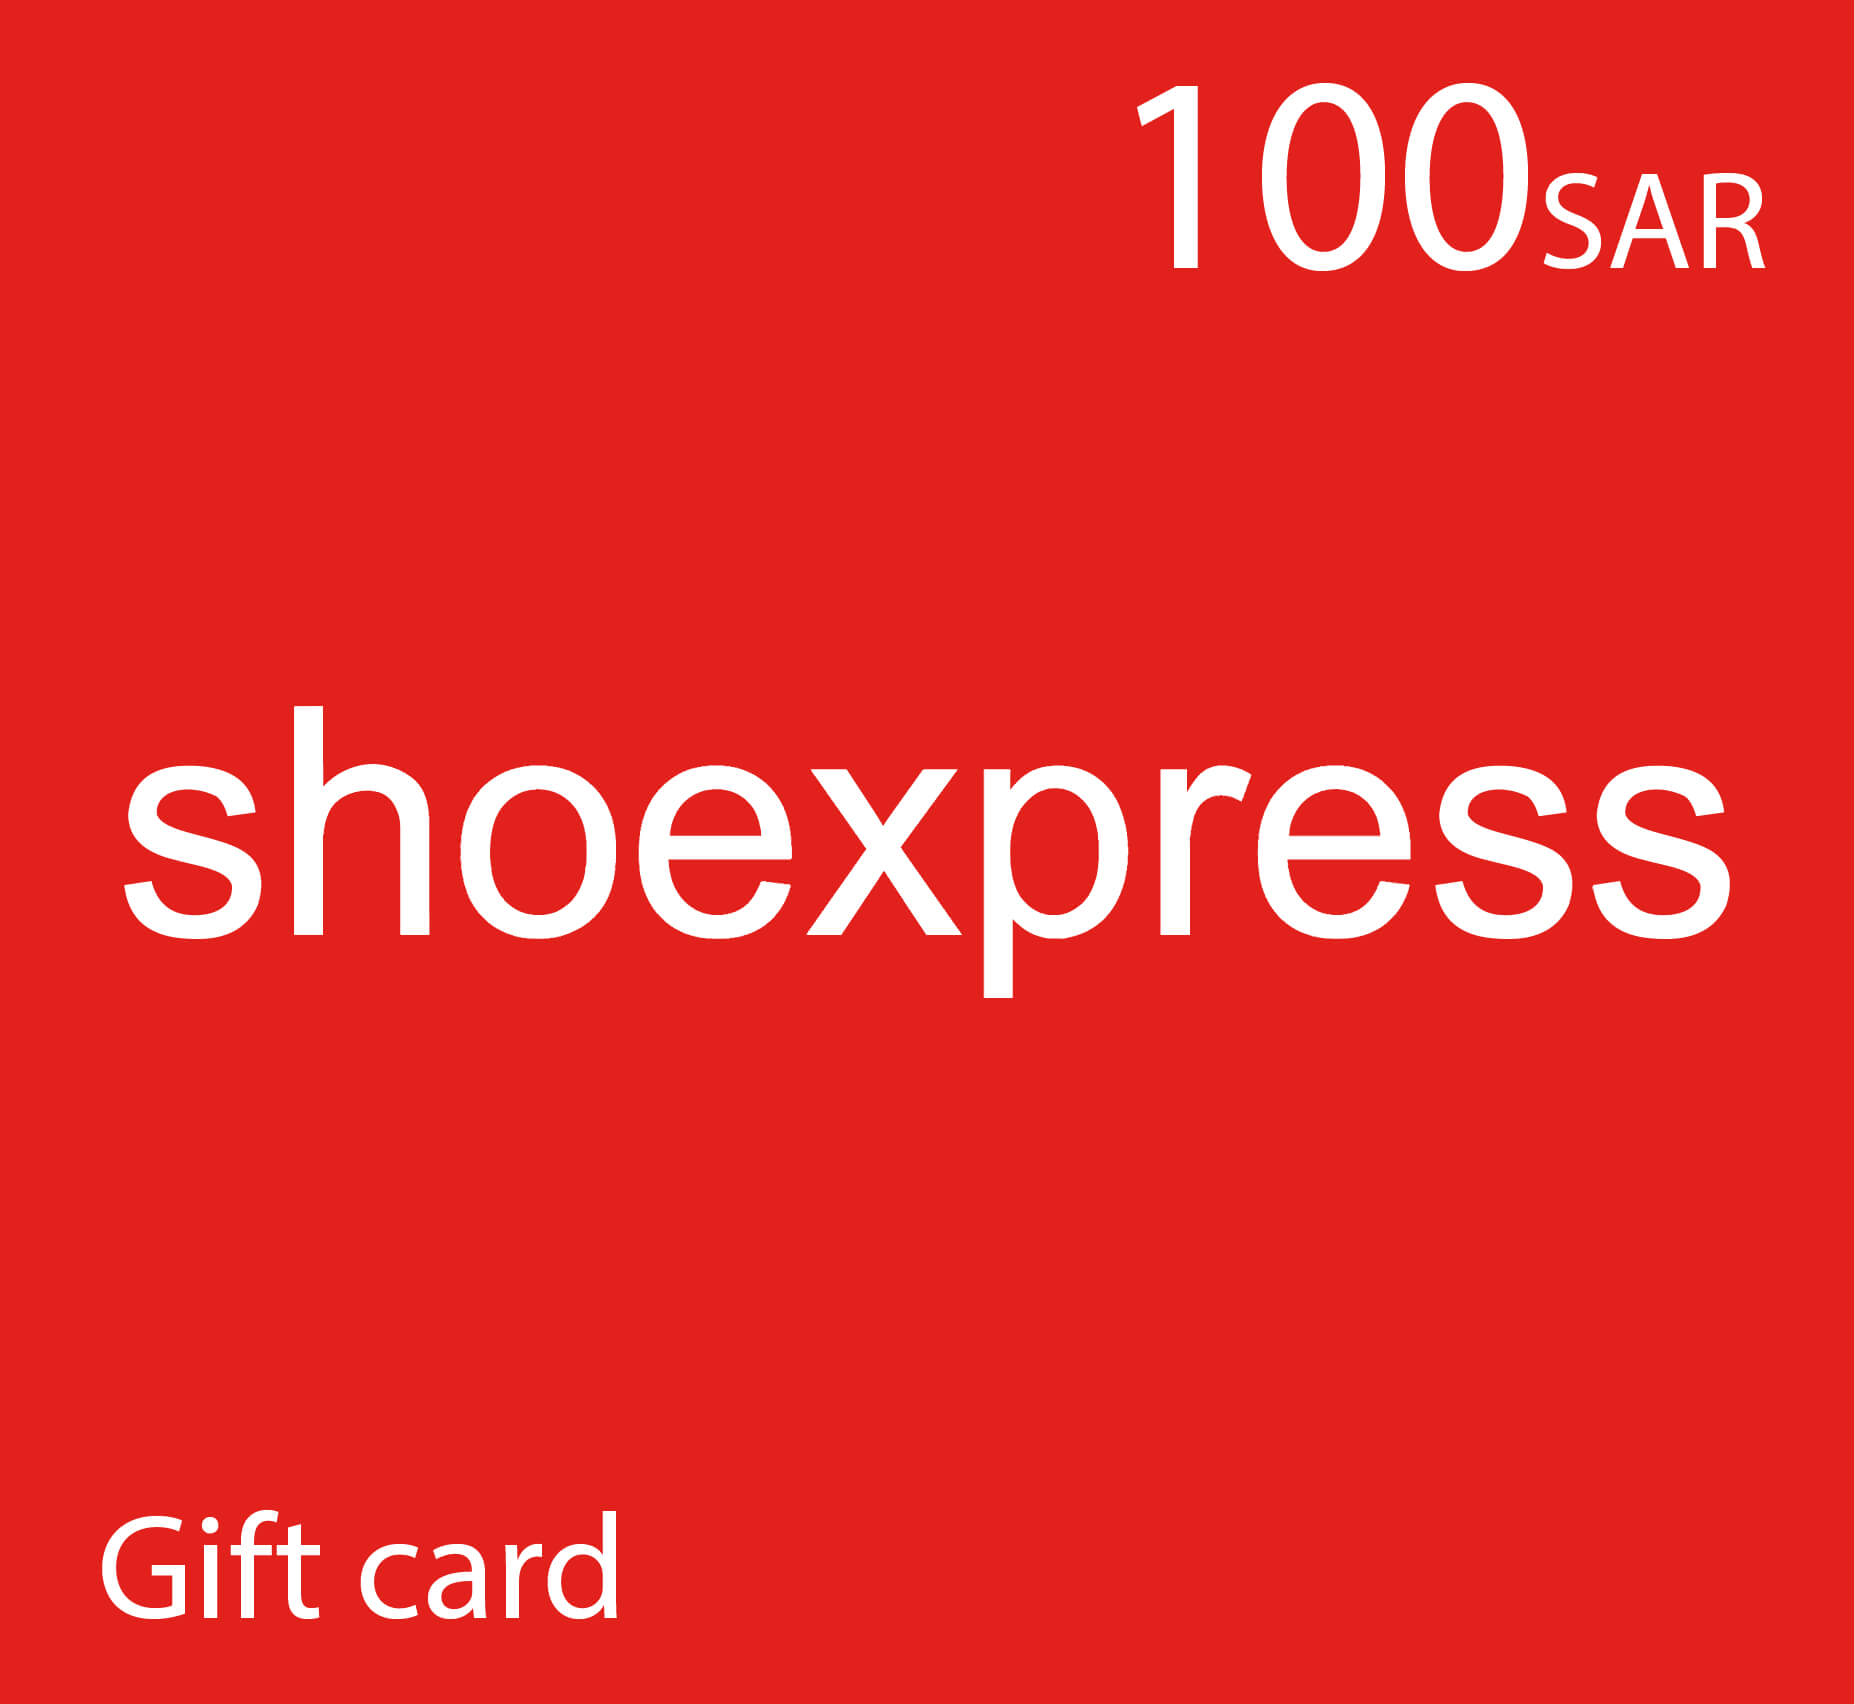 بطاقة هدايا شواكسبريس Shoexpress - قسيمة شراء شو اكسبرس - 100 ريال